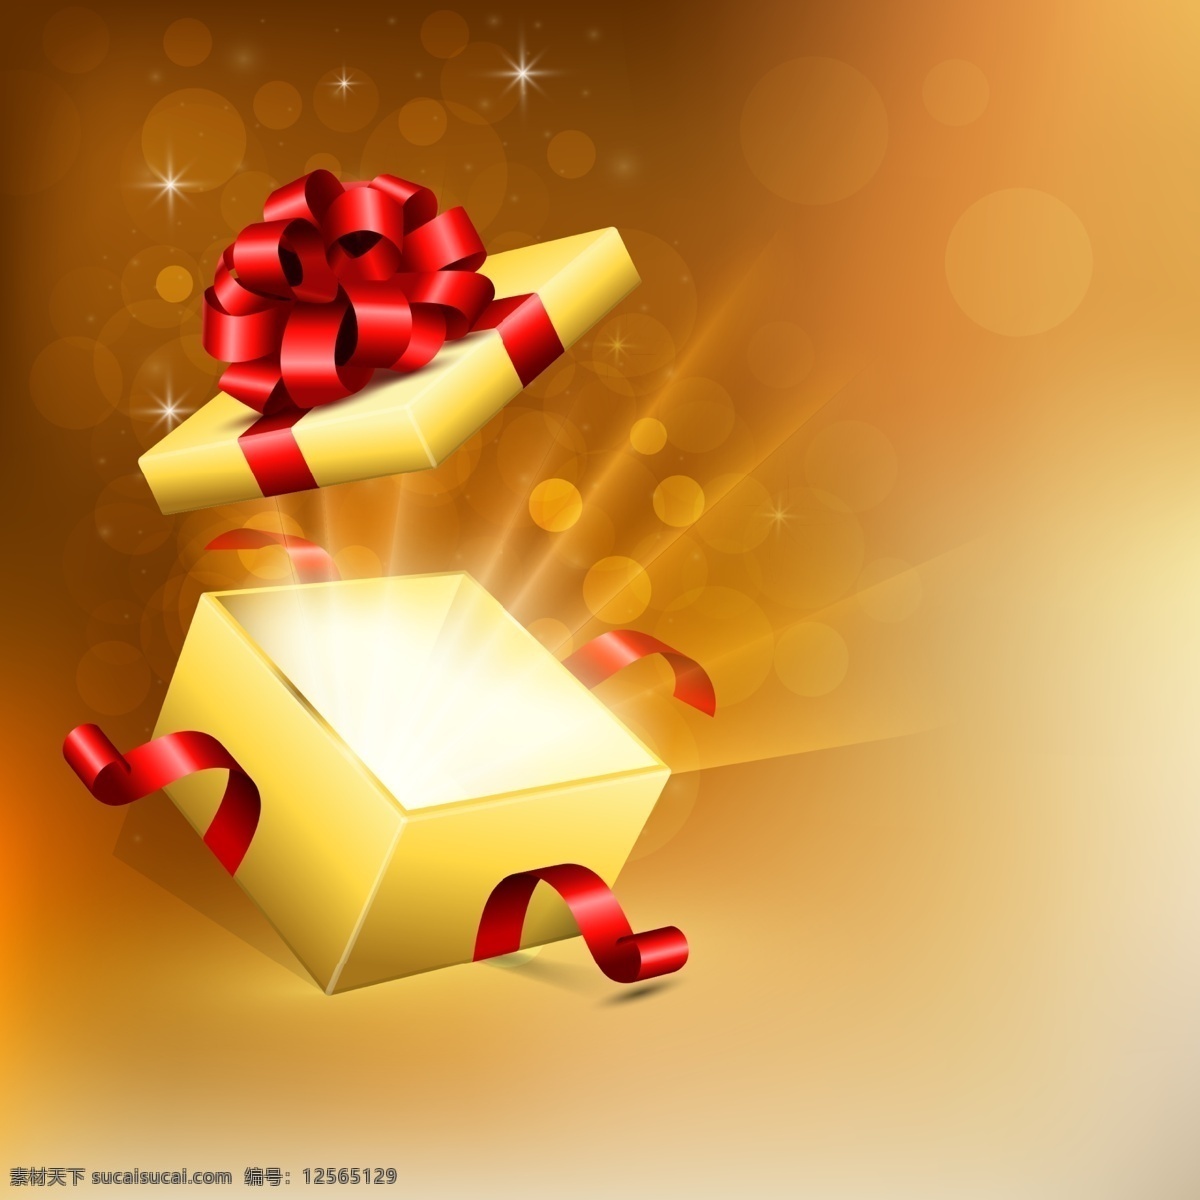 礼盒背景 礼盒 节日礼盒 促销 礼品 生日礼盒 喜庆 红色丝带 金色 生日气球